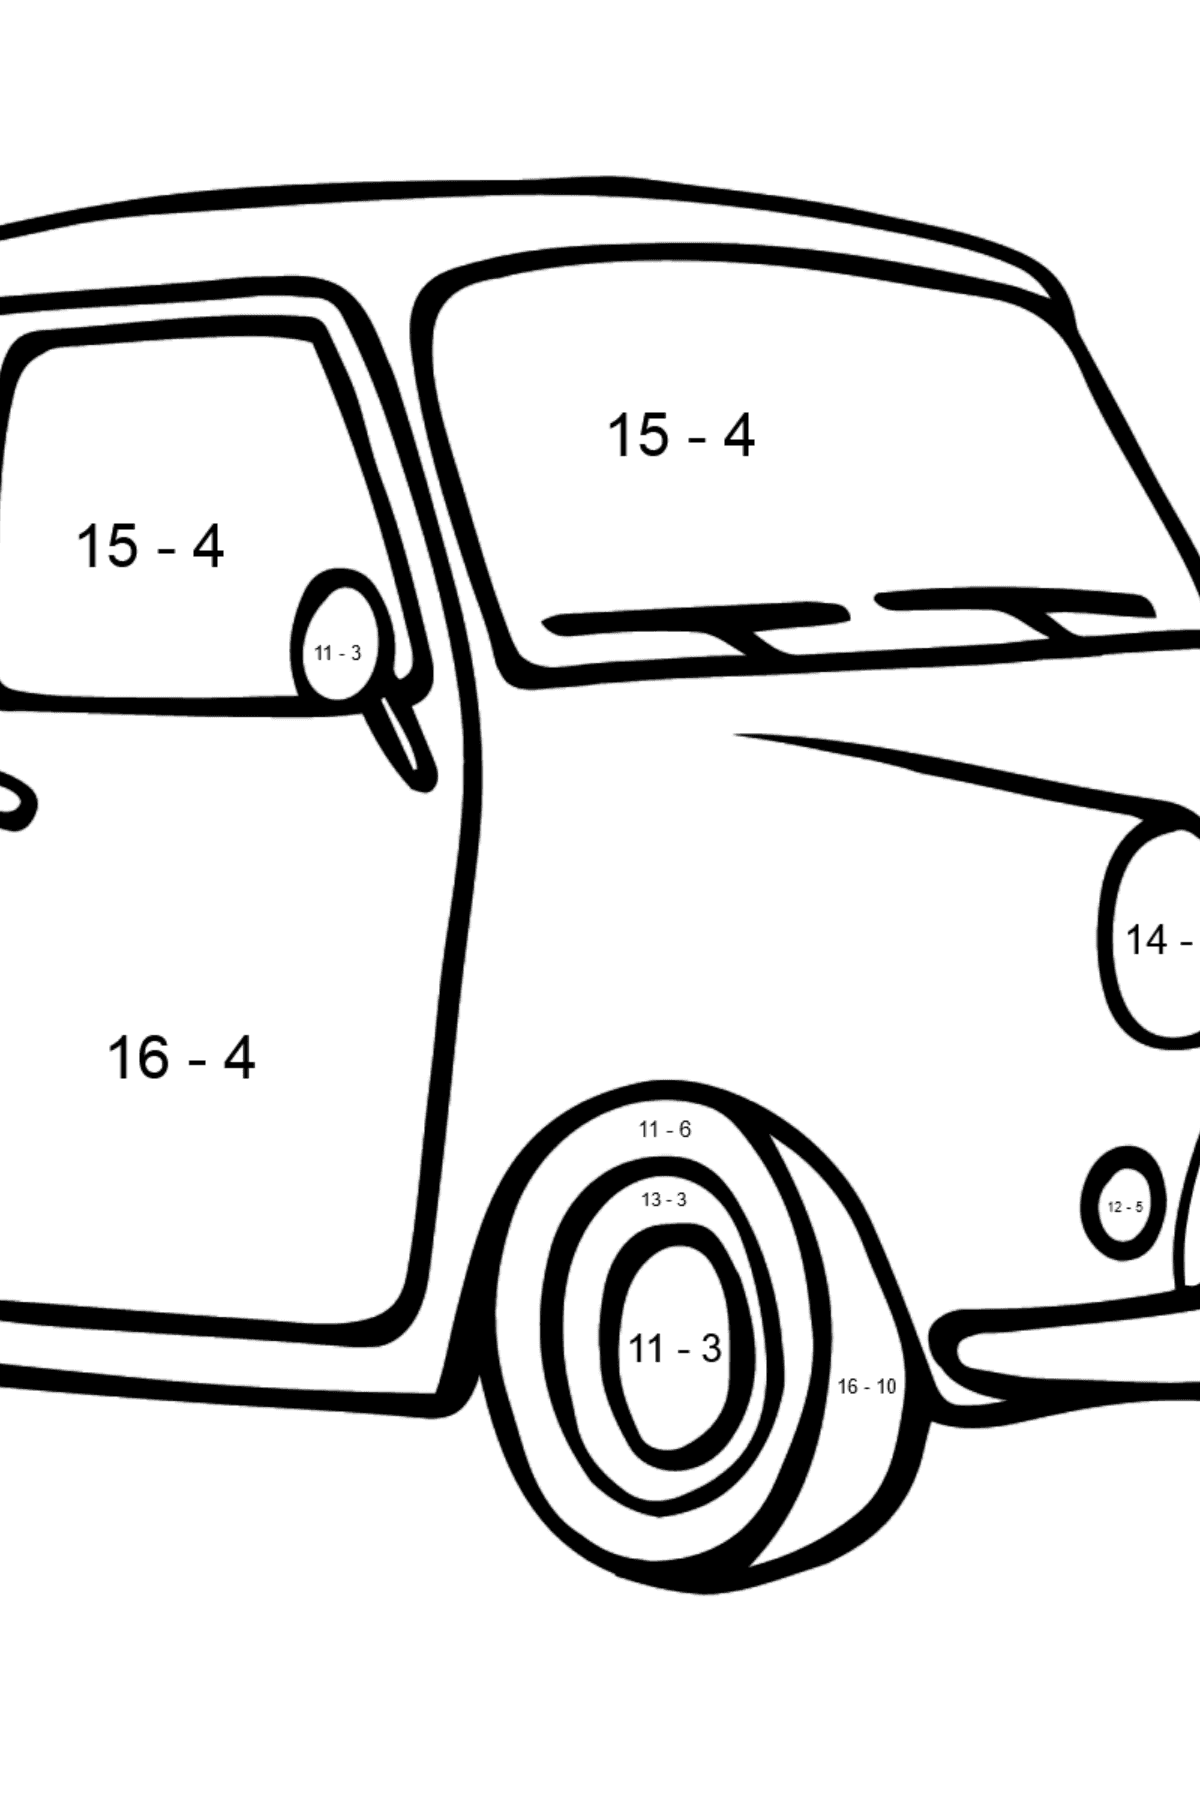 Fiat 600 Auto Ausmalbild - Mathe Ausmalbilder - Subtraktion für Kinder